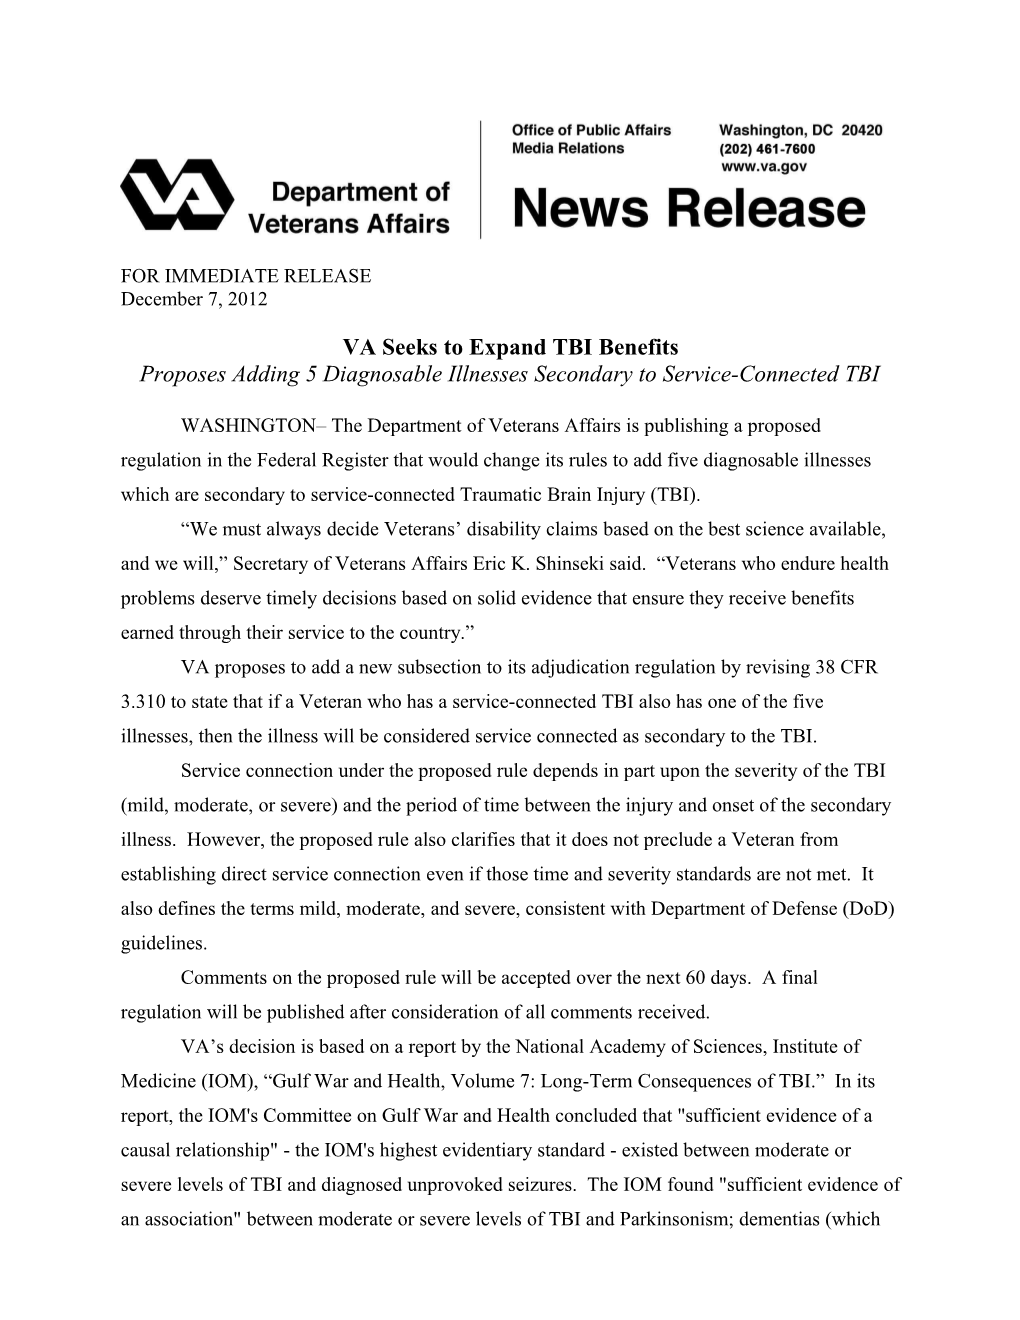 VA Seeks to Expand TBI Benefits